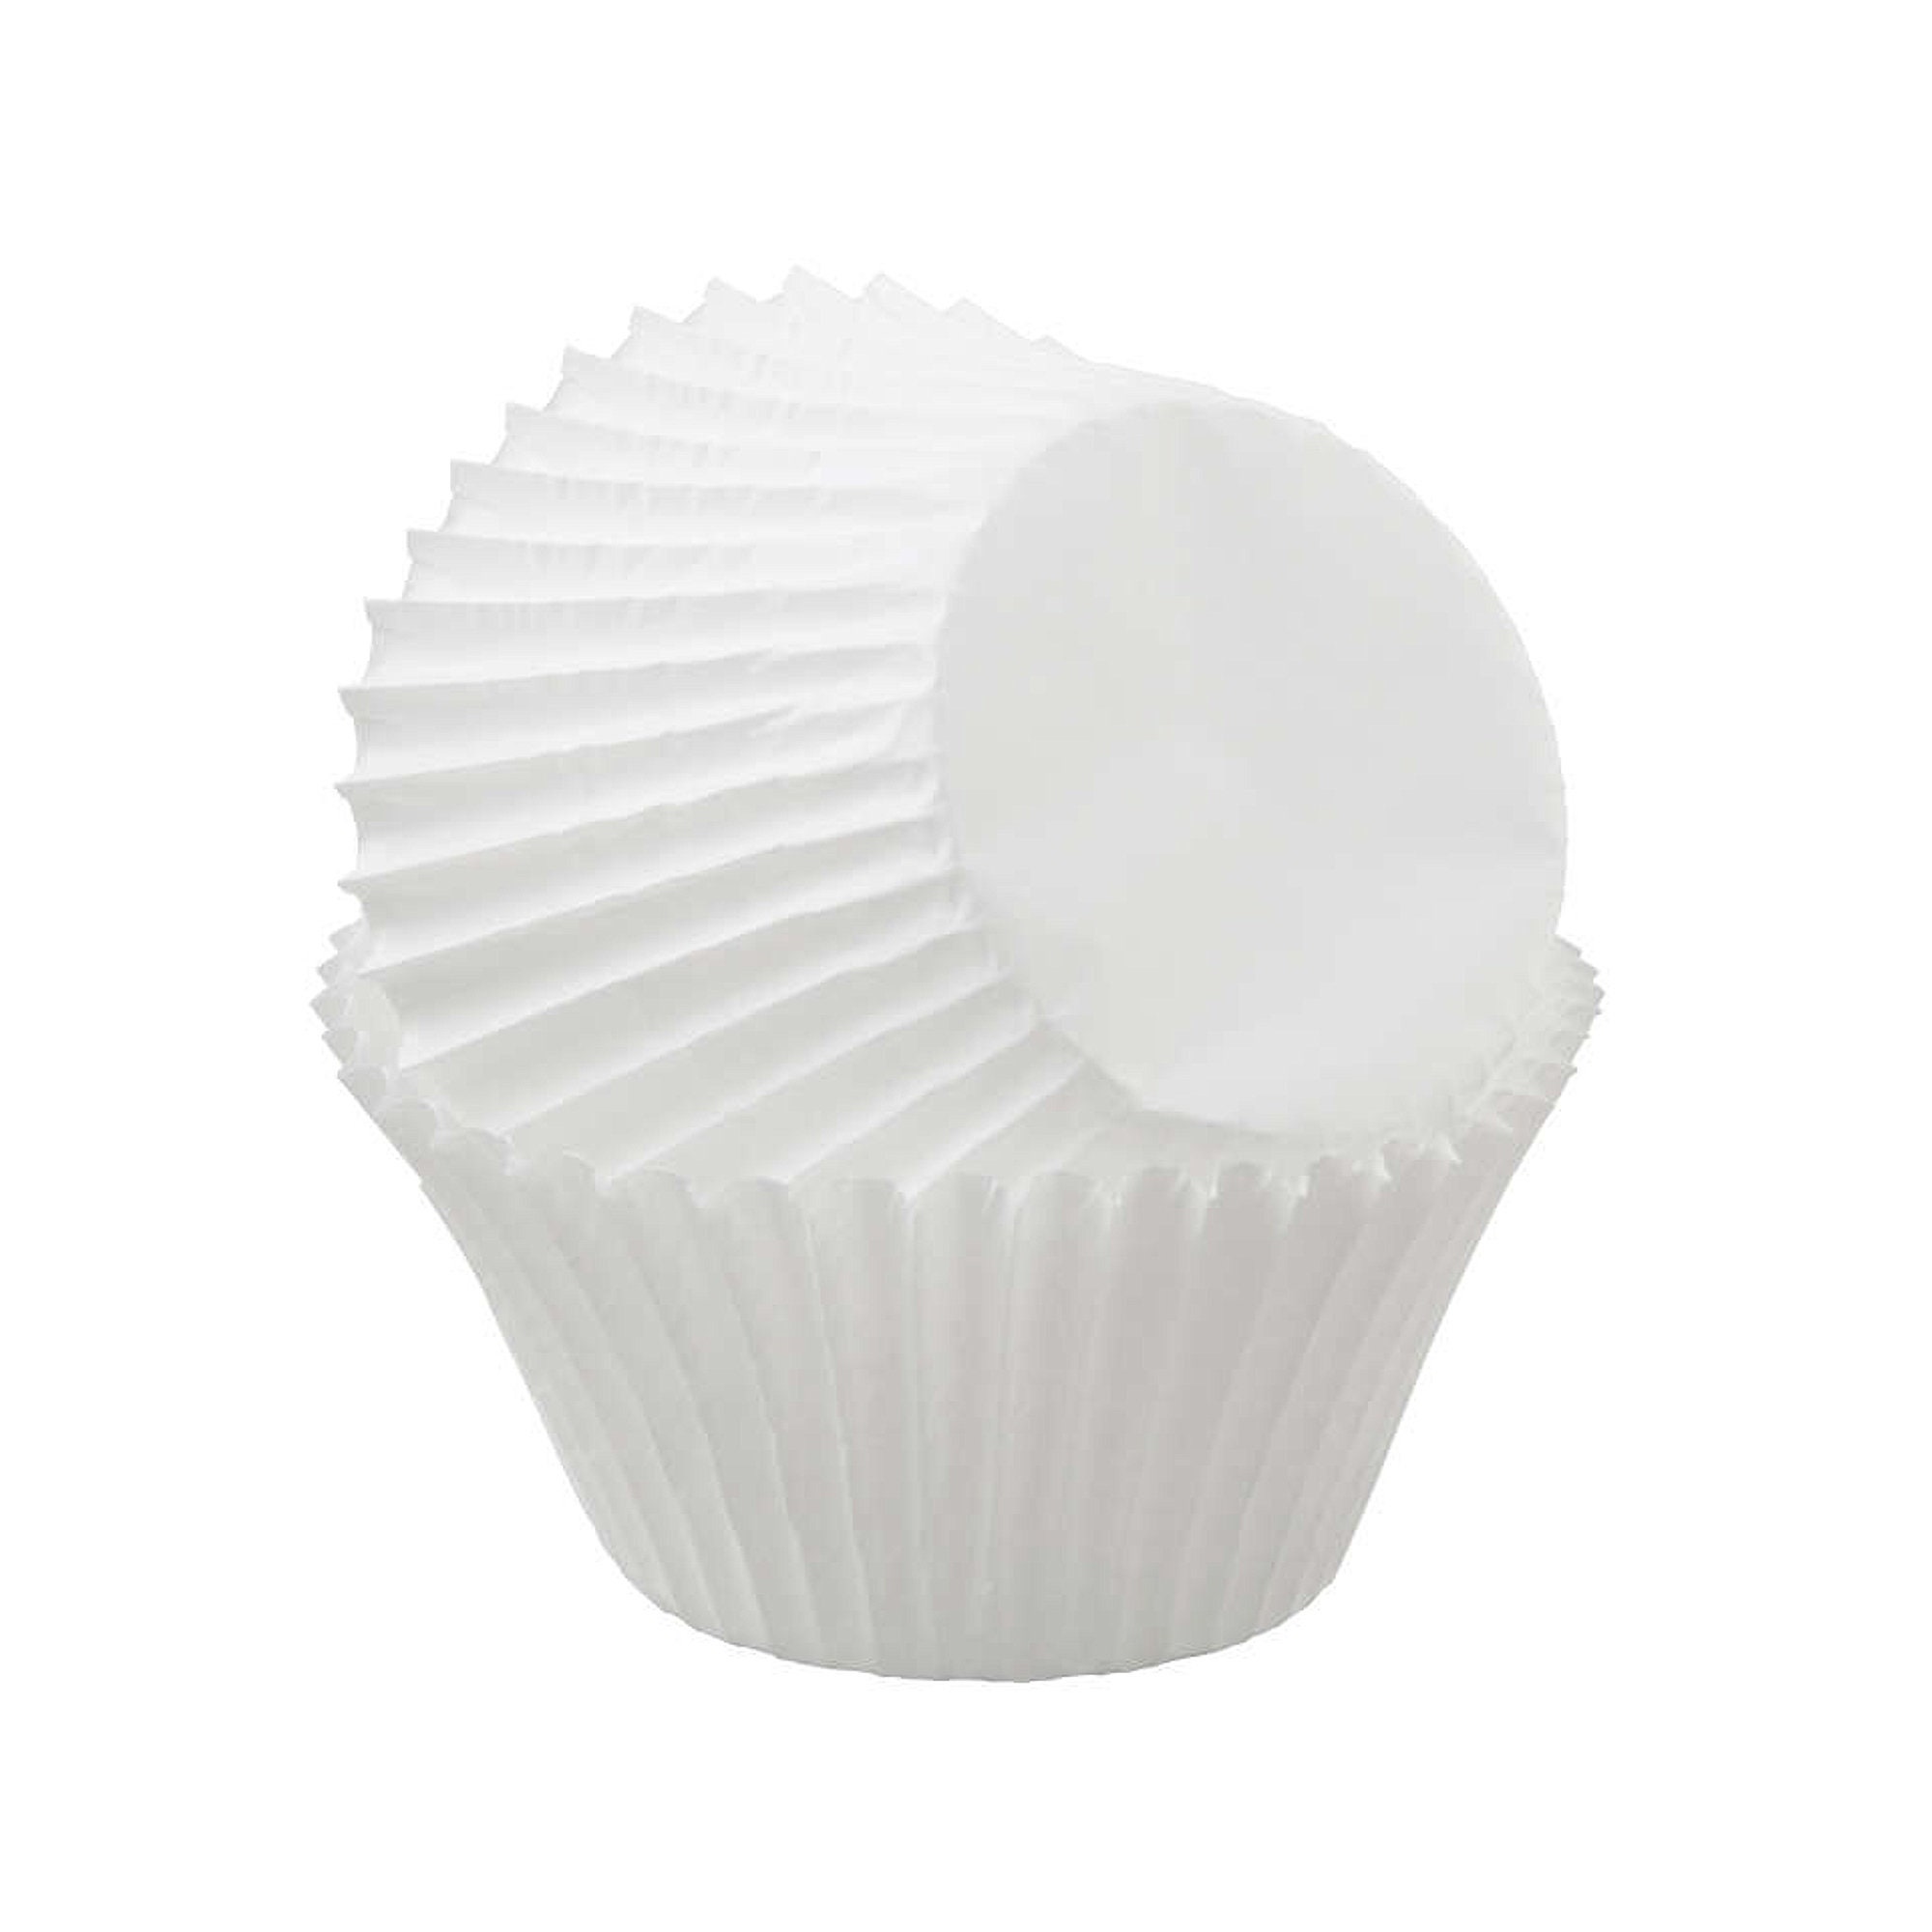 Jumbo White Cupcake Liners 50-count fits Jumbo Muffin Etsy